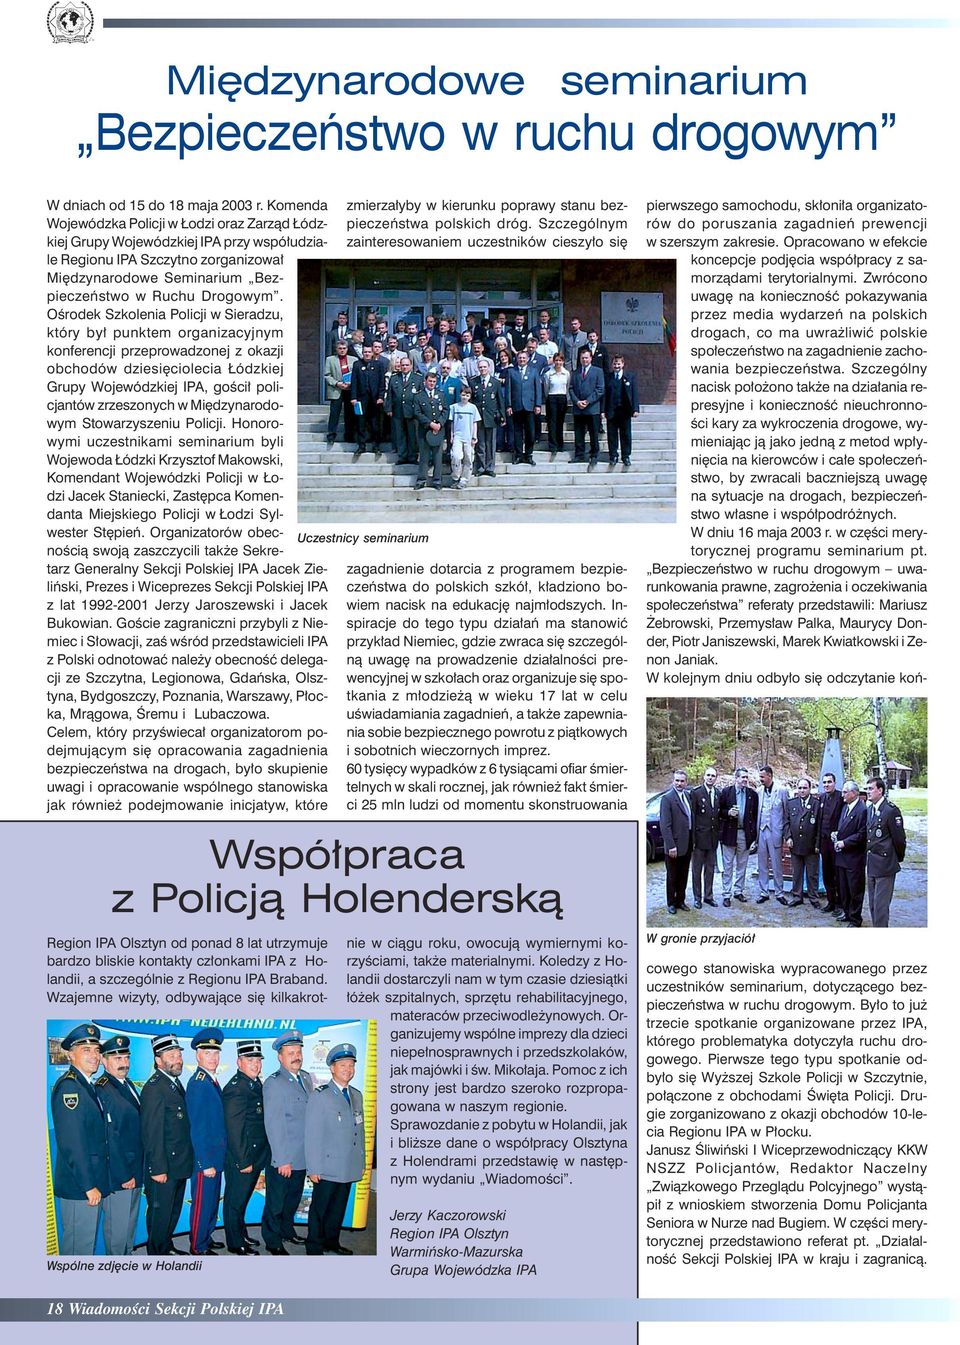 Ośrodek Szkolenia Policji w Sieradzu, który był punktem organizacyjnym konferencji przeprowadzonej z okazji obchodów dziesięciolecia Łódzkiej Grupy Wojewódzkiej IPA, gościł policjantów zrzeszonych w